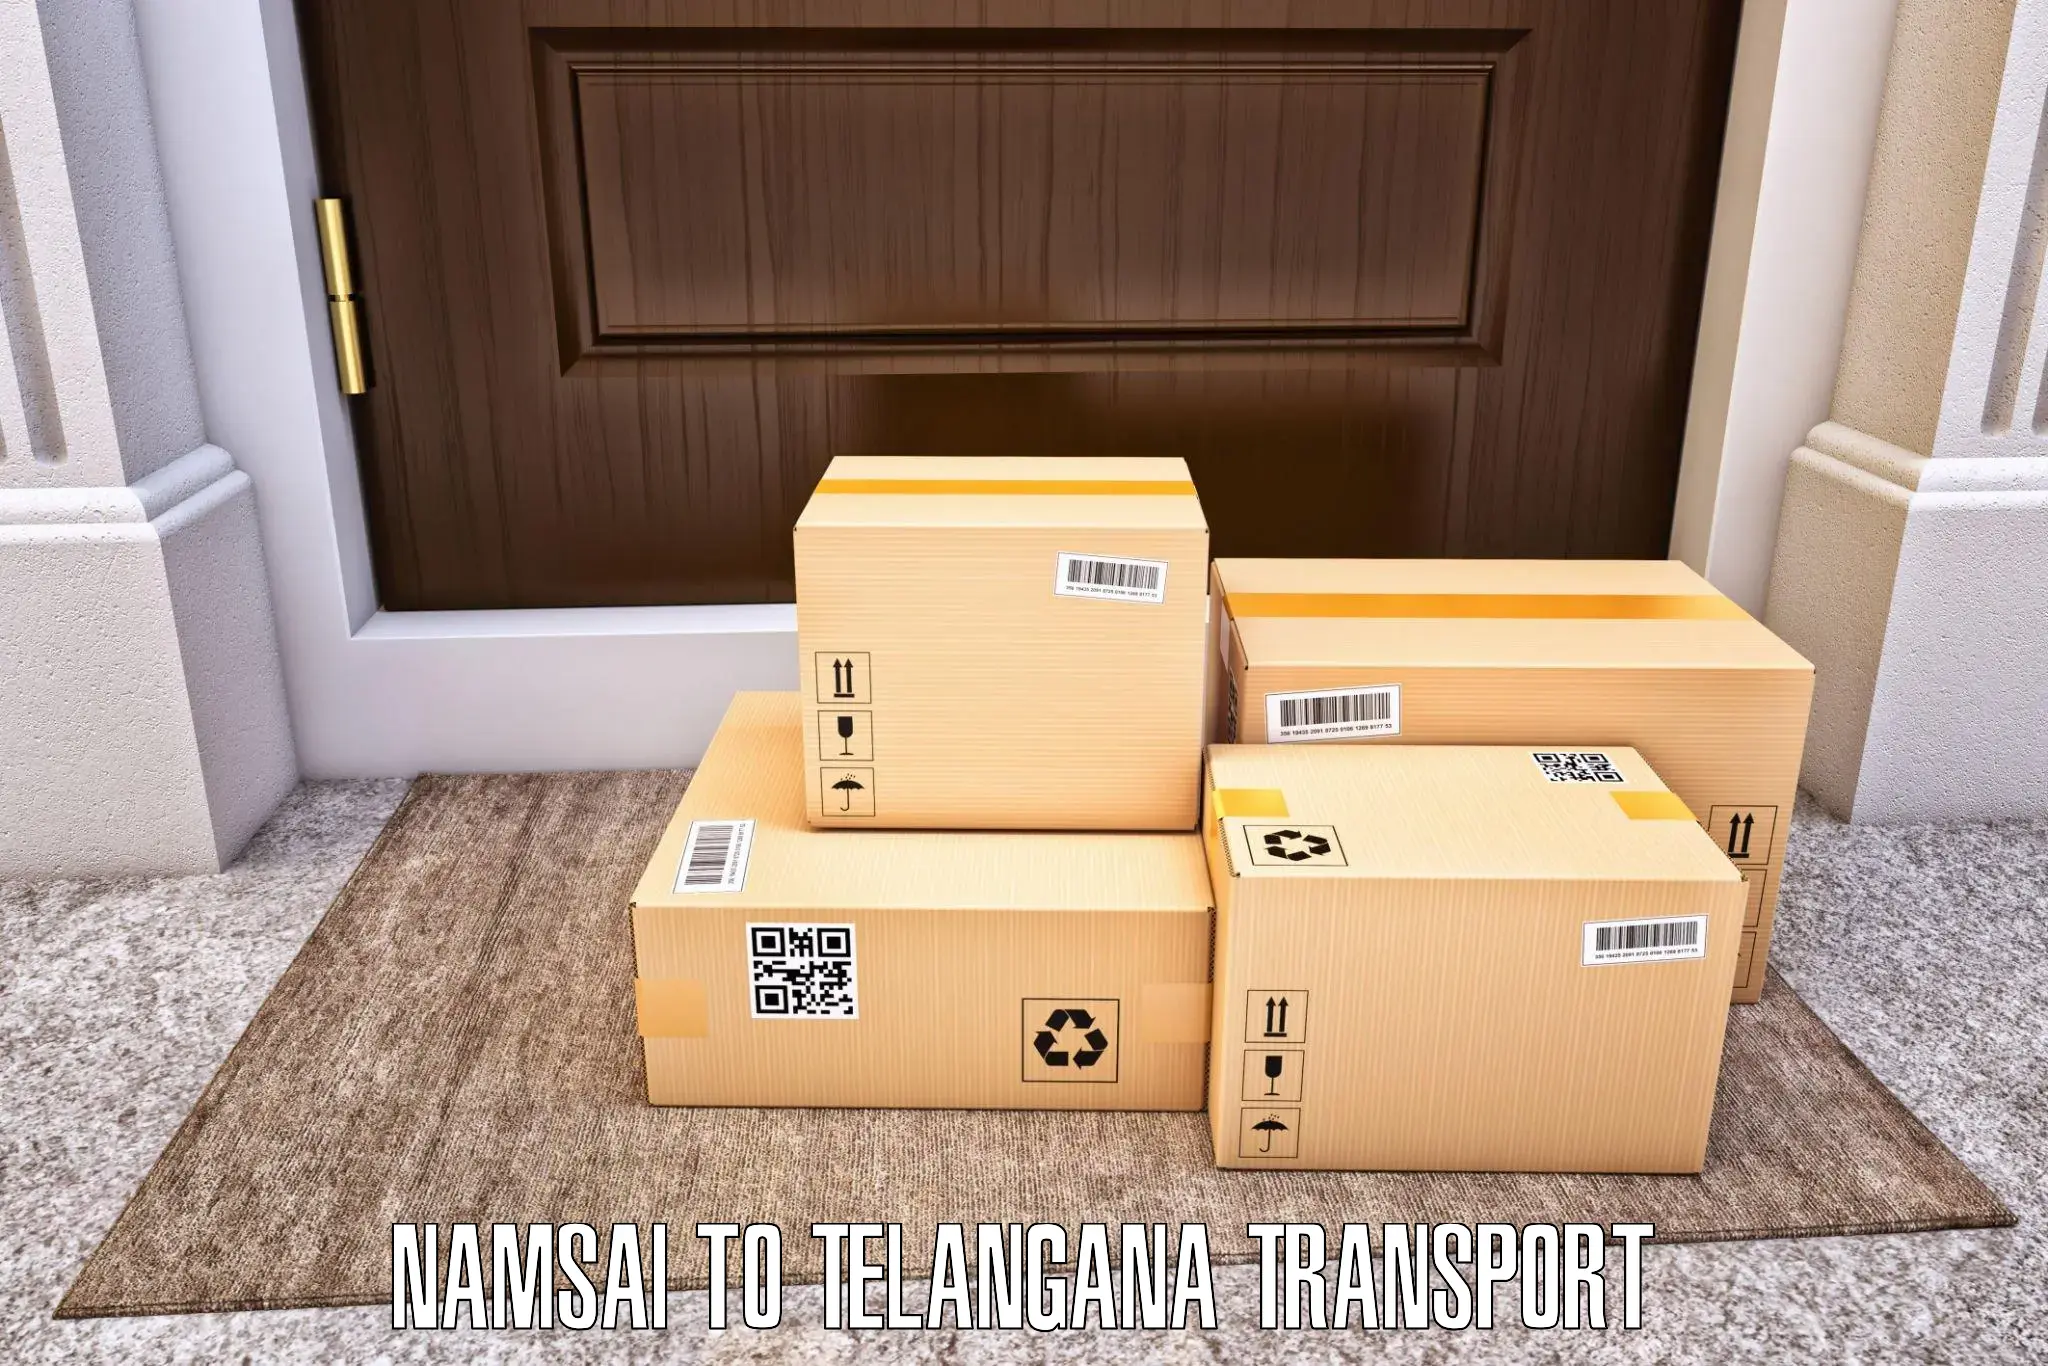 Domestic transport services Namsai to Narmetta